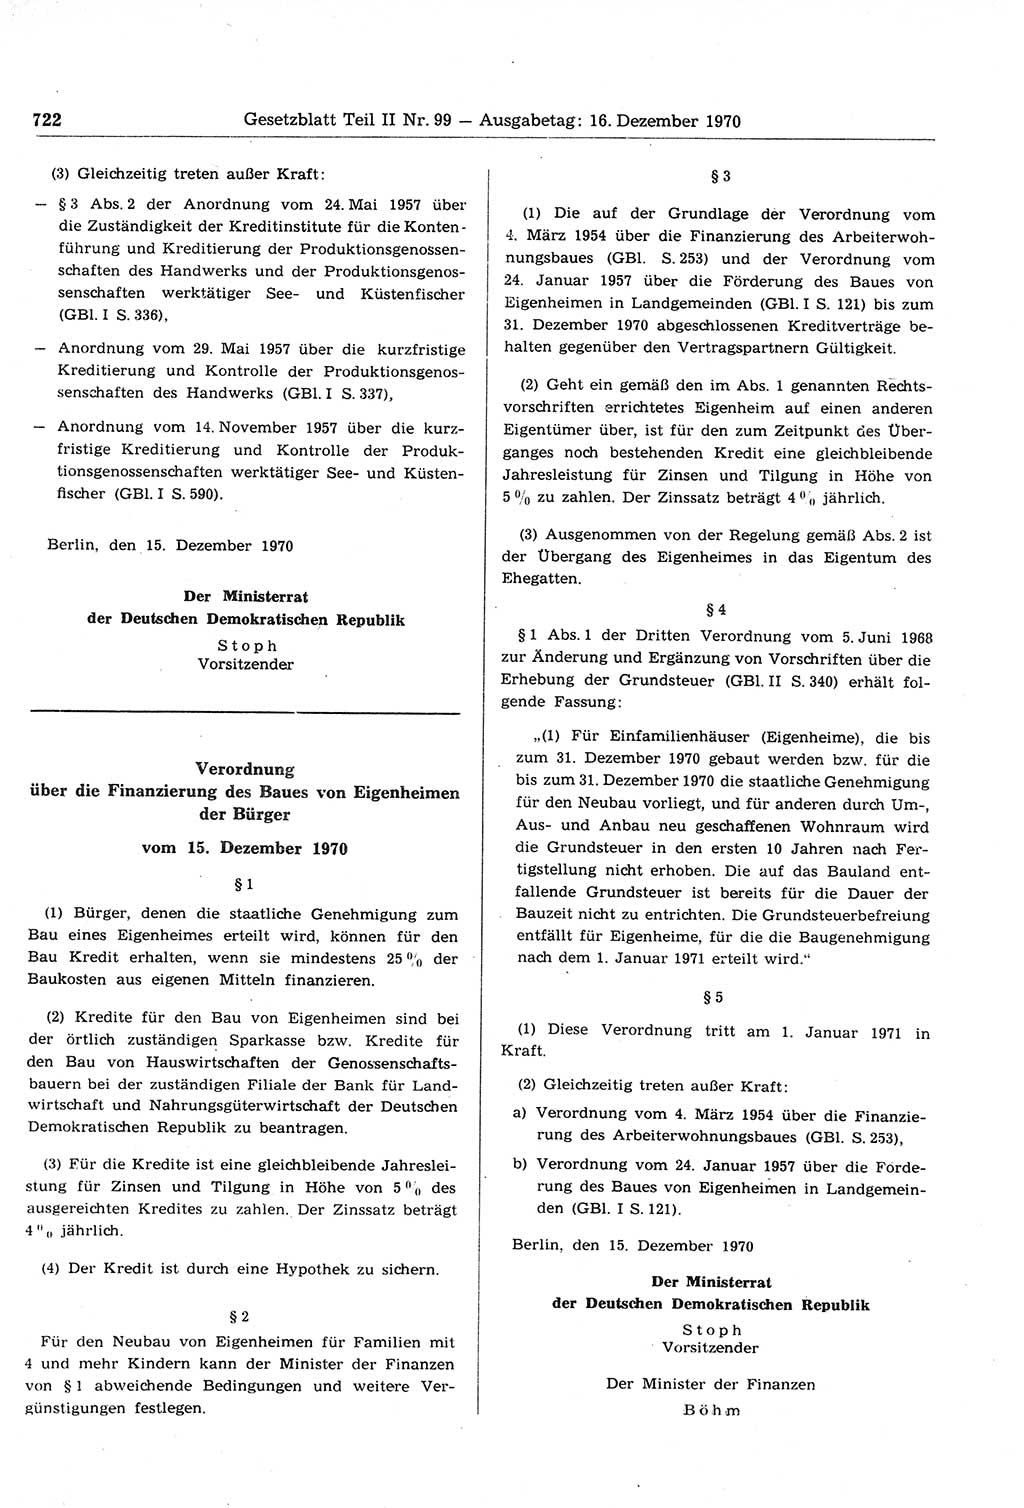 Gesetzblatt (GBl.) der Deutschen Demokratischen Republik (DDR) Teil ⅠⅠ 1970, Seite 722 (GBl. DDR ⅠⅠ 1970, S. 722)